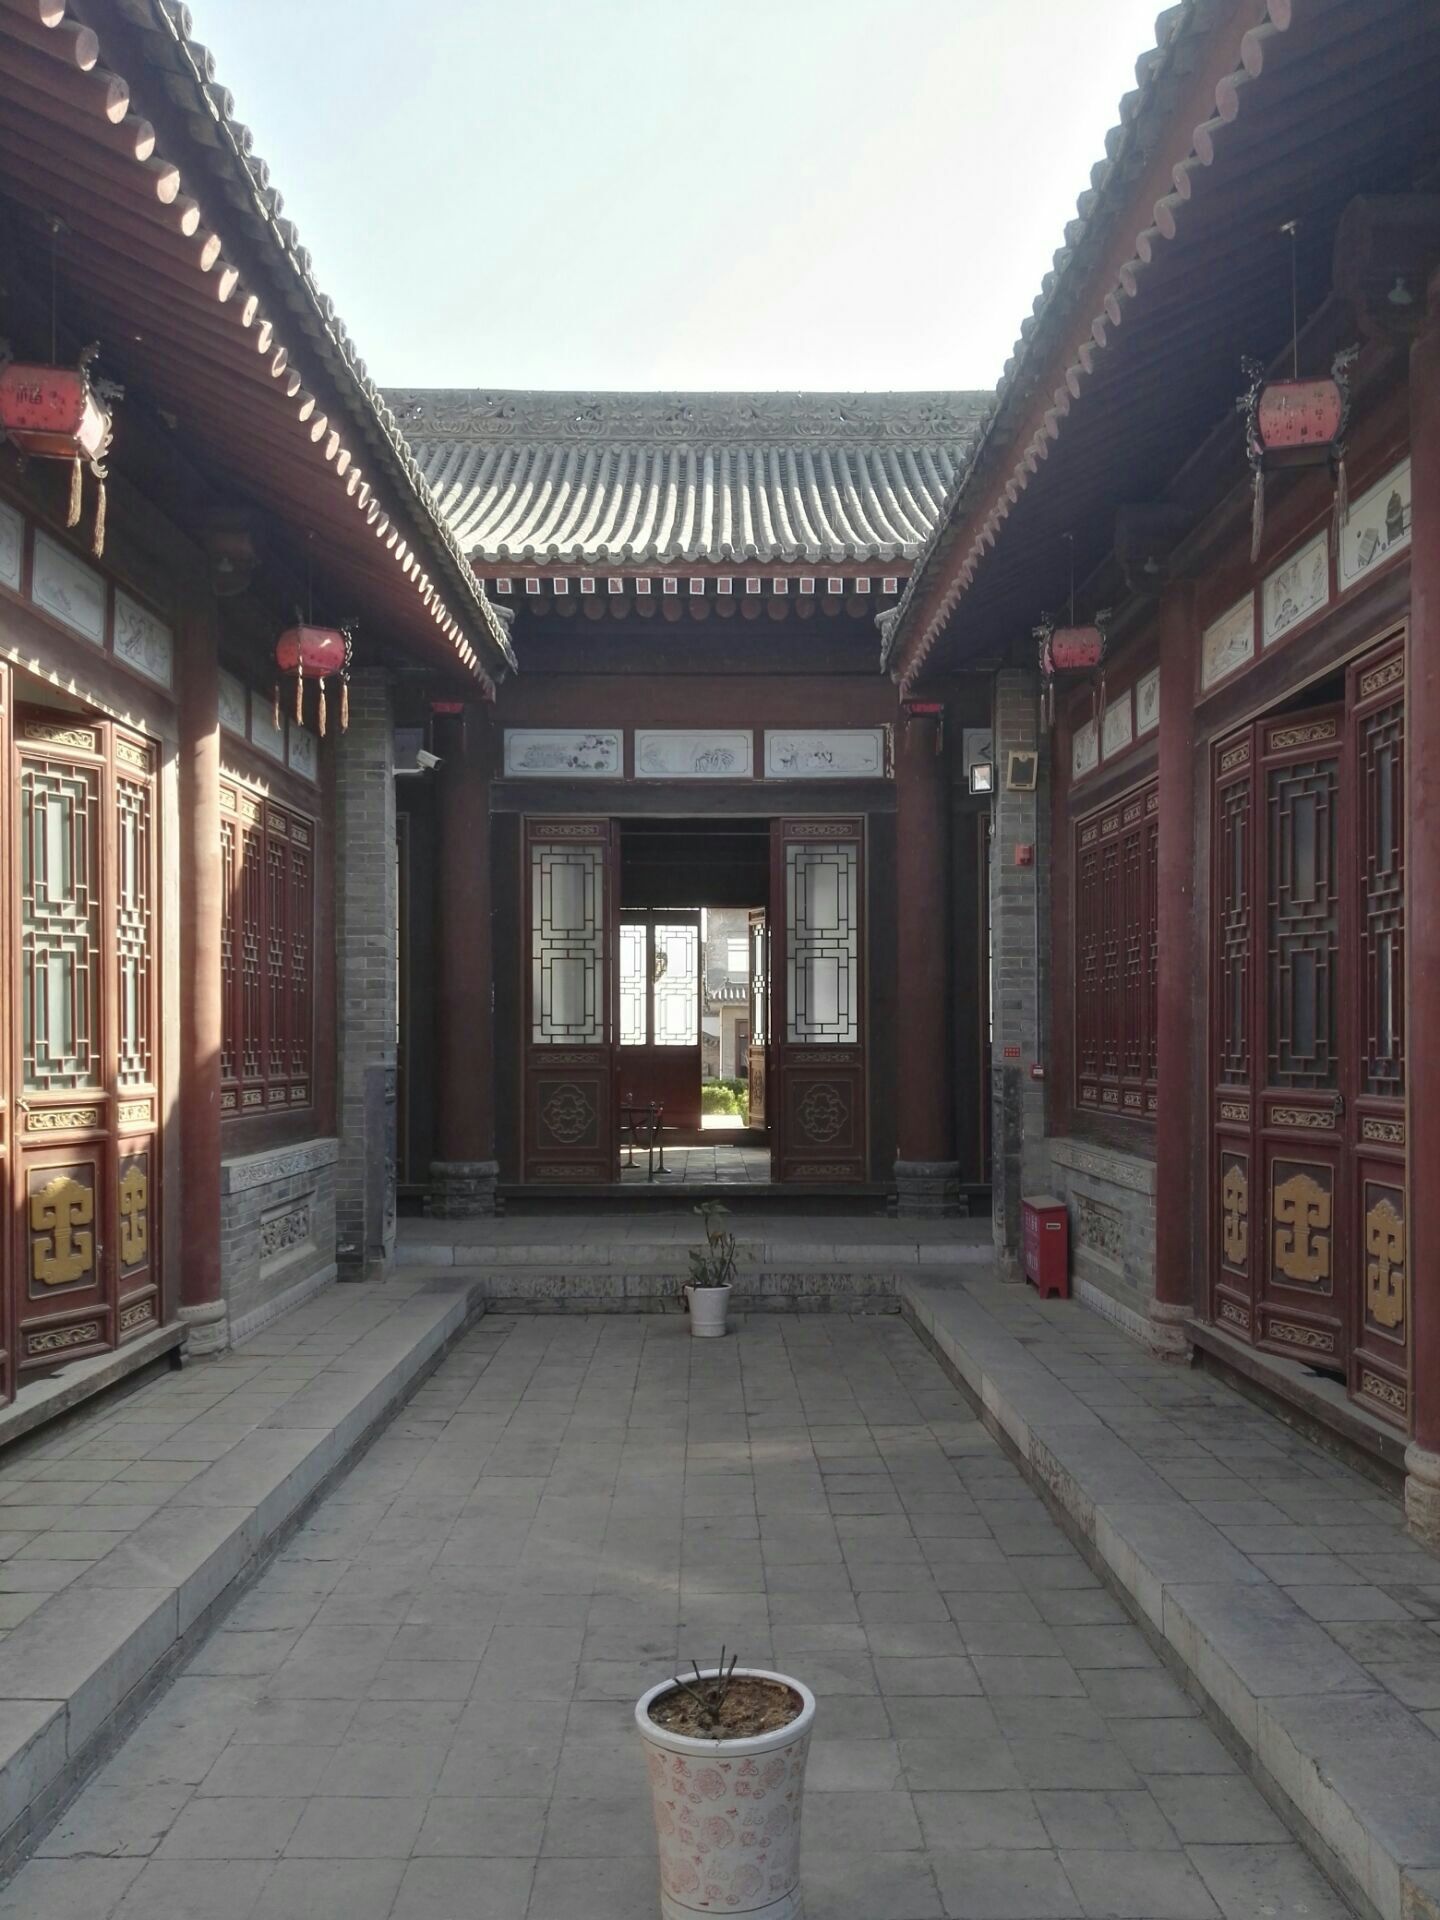 三原周家大院:位于陕西省三原县城北4公里的鲁桥镇孟店村,始建于清